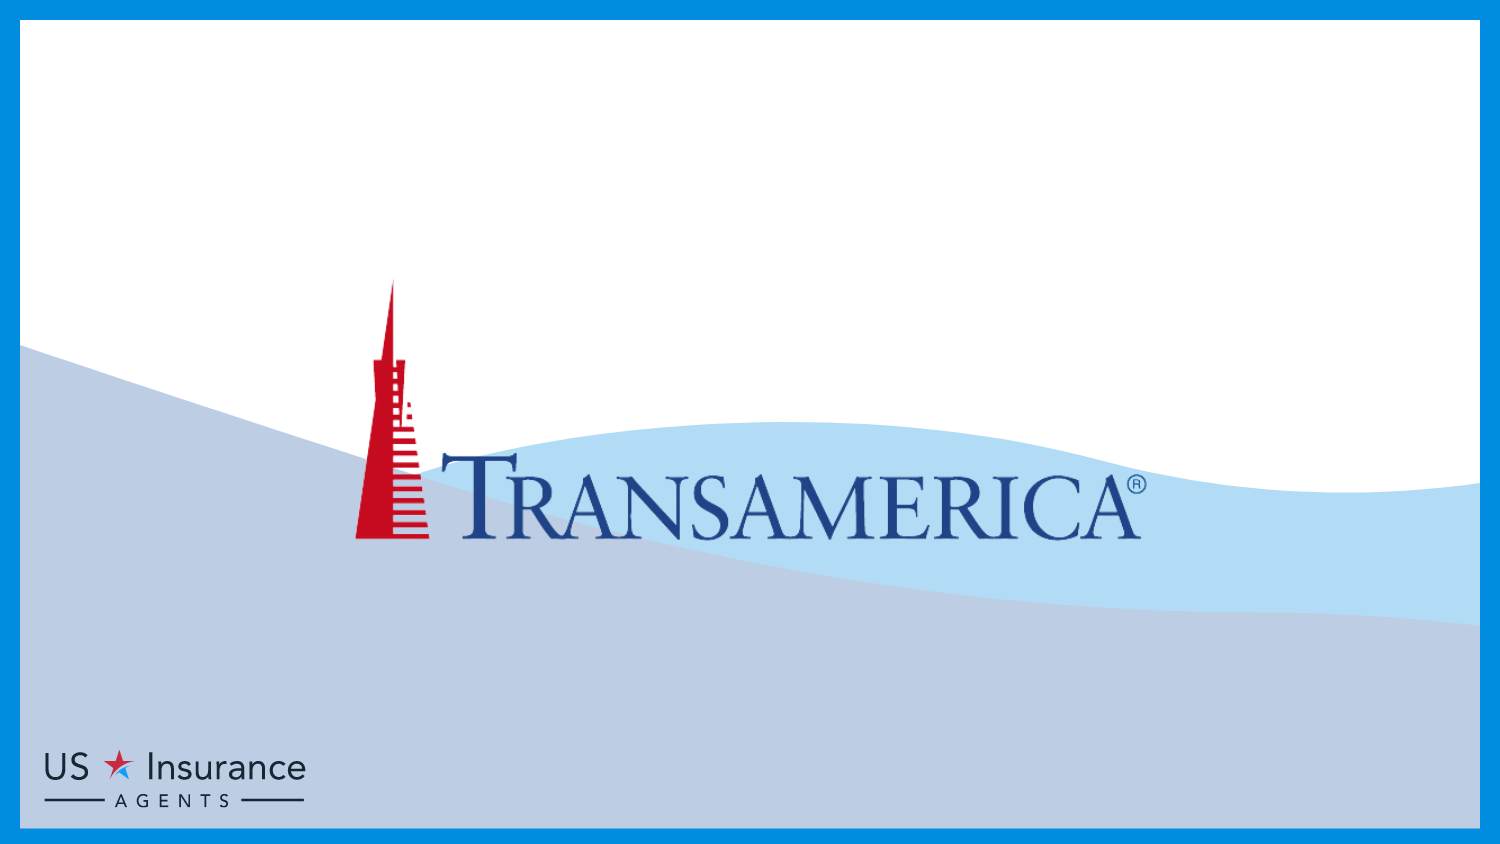 Transamerica: Best Life Insurance for High-Net-Worth